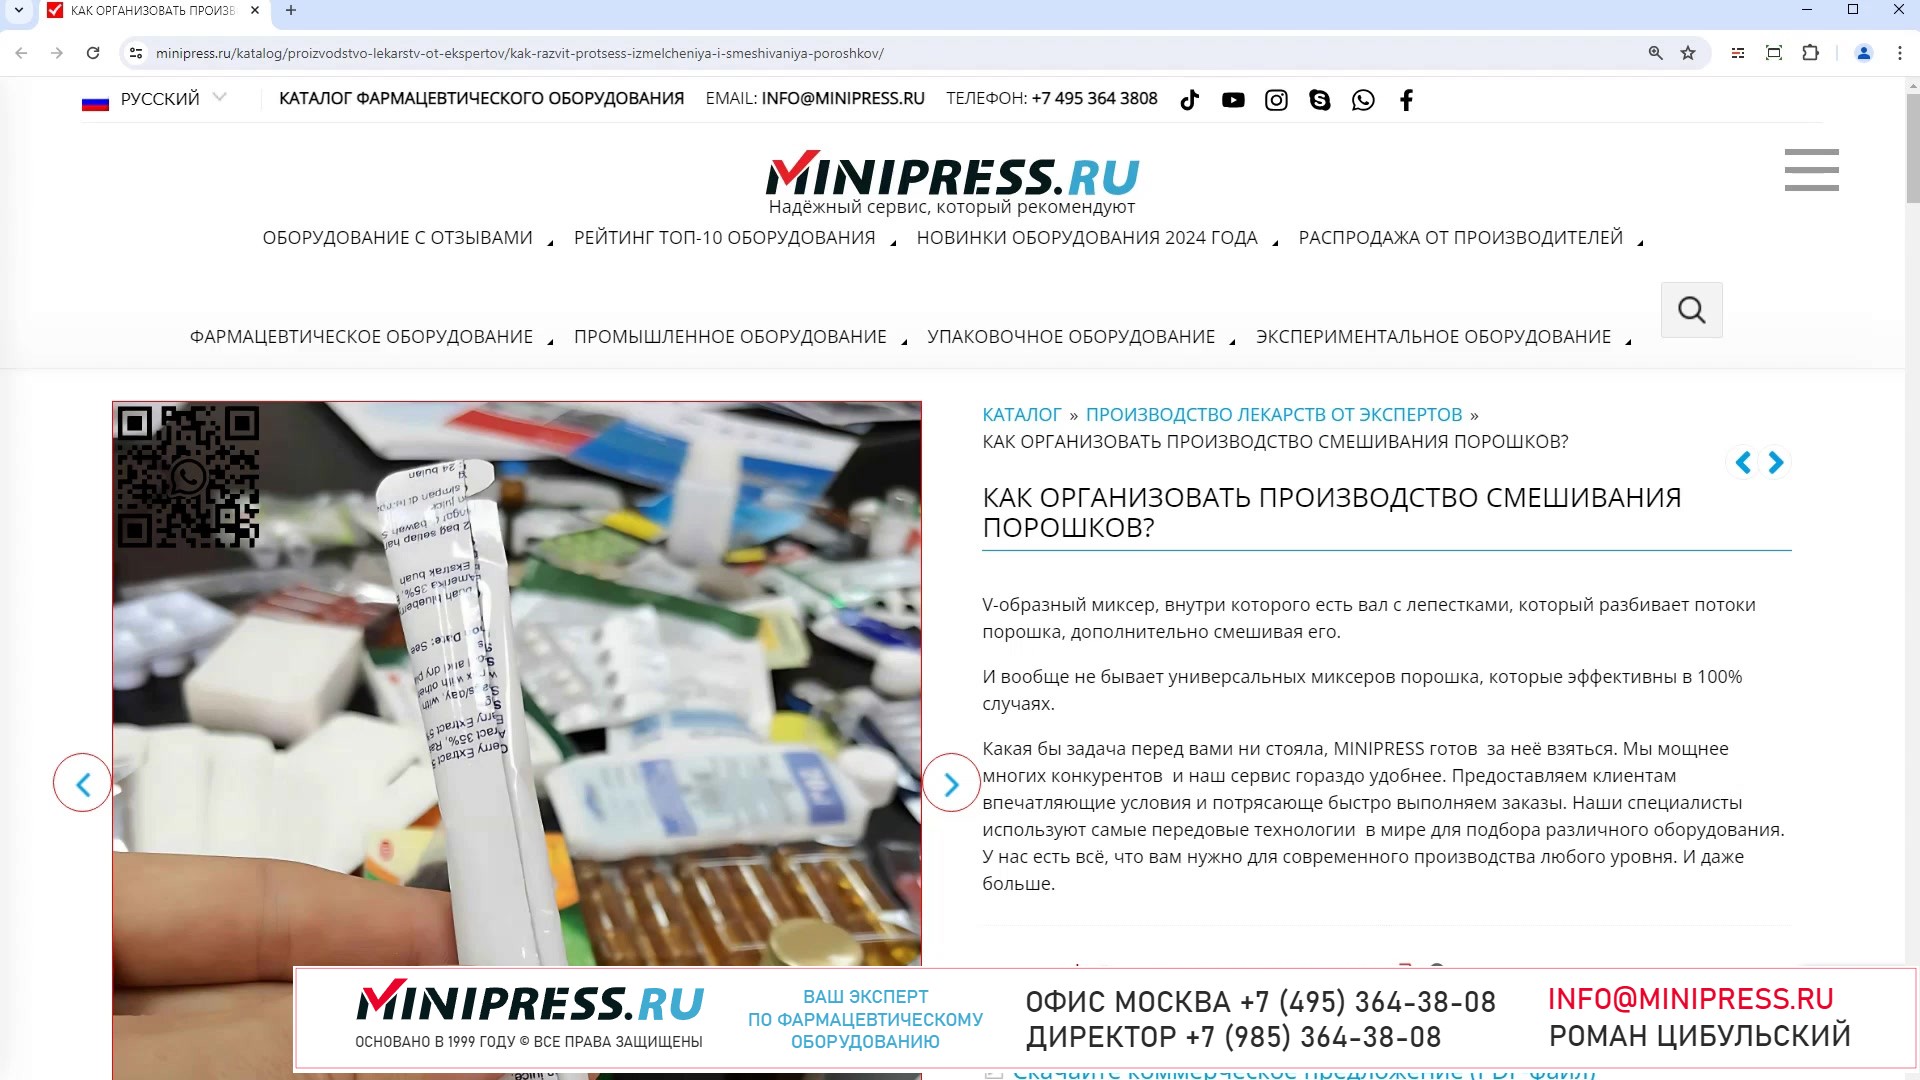 Minipress.ru Как организовать производство смешивания порошков